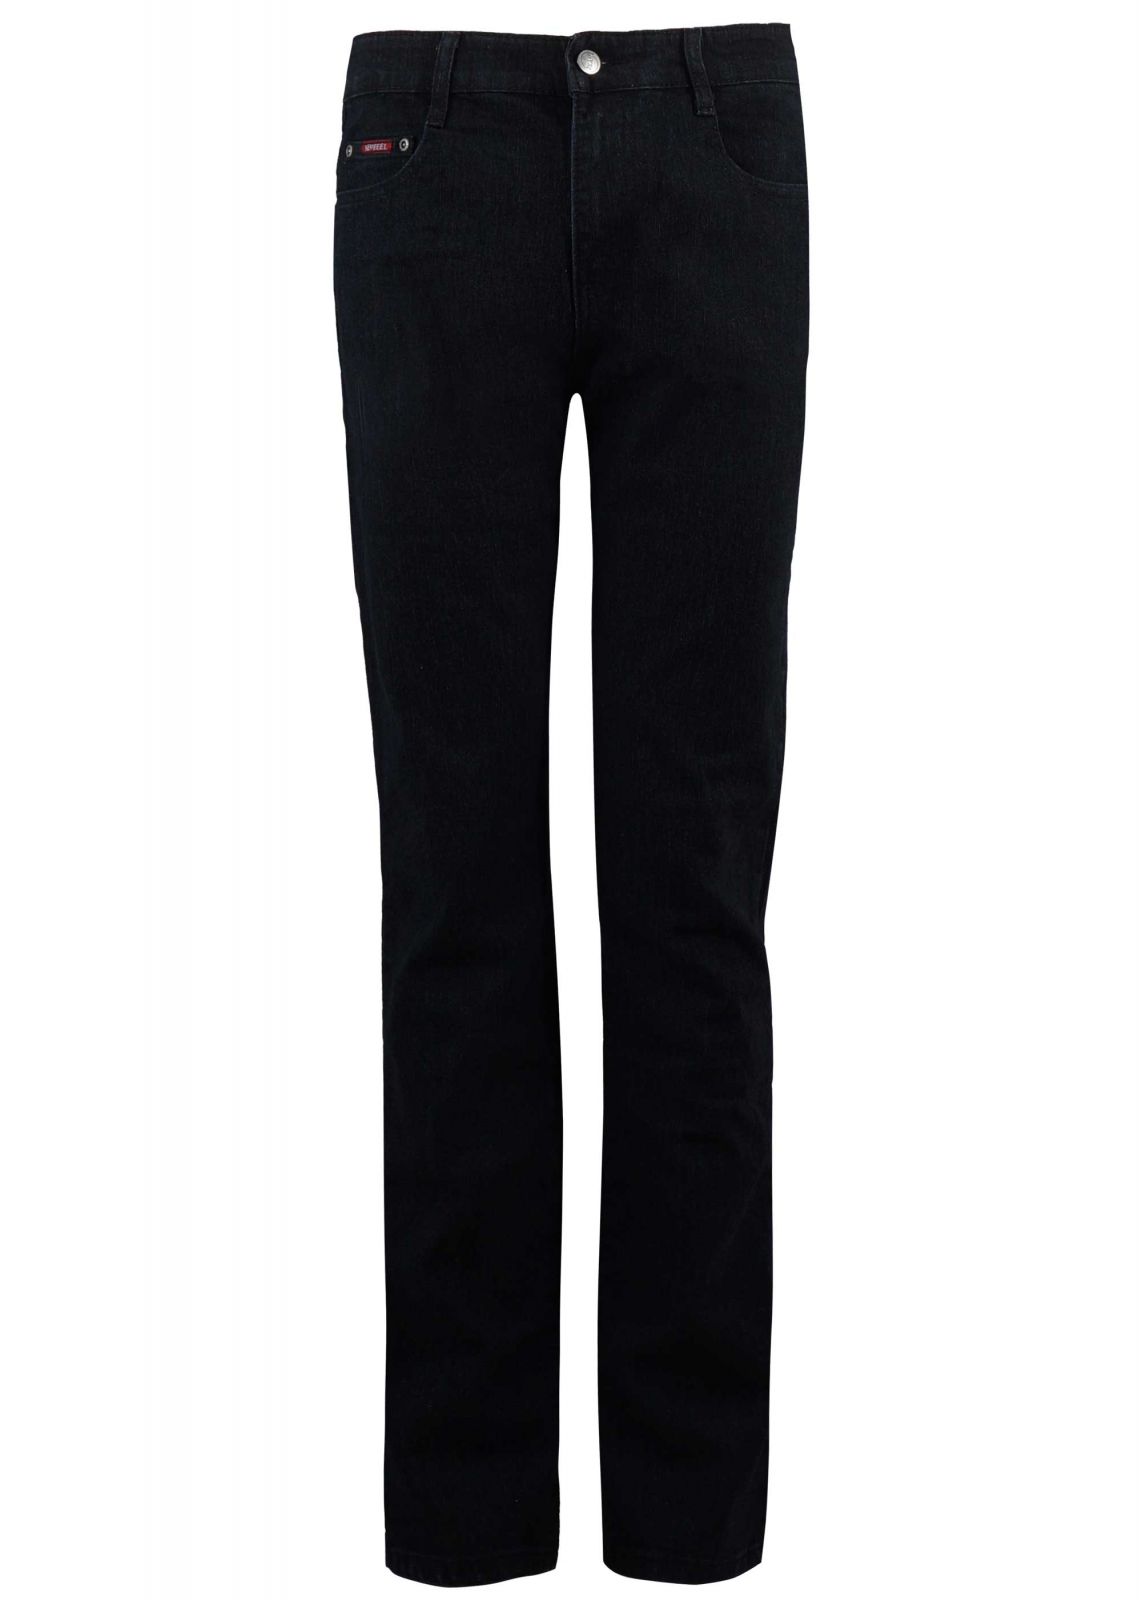 Αντρικό παντελόνι jean ελαστικό σε ίσια κλασική γραμμή. Basic collection